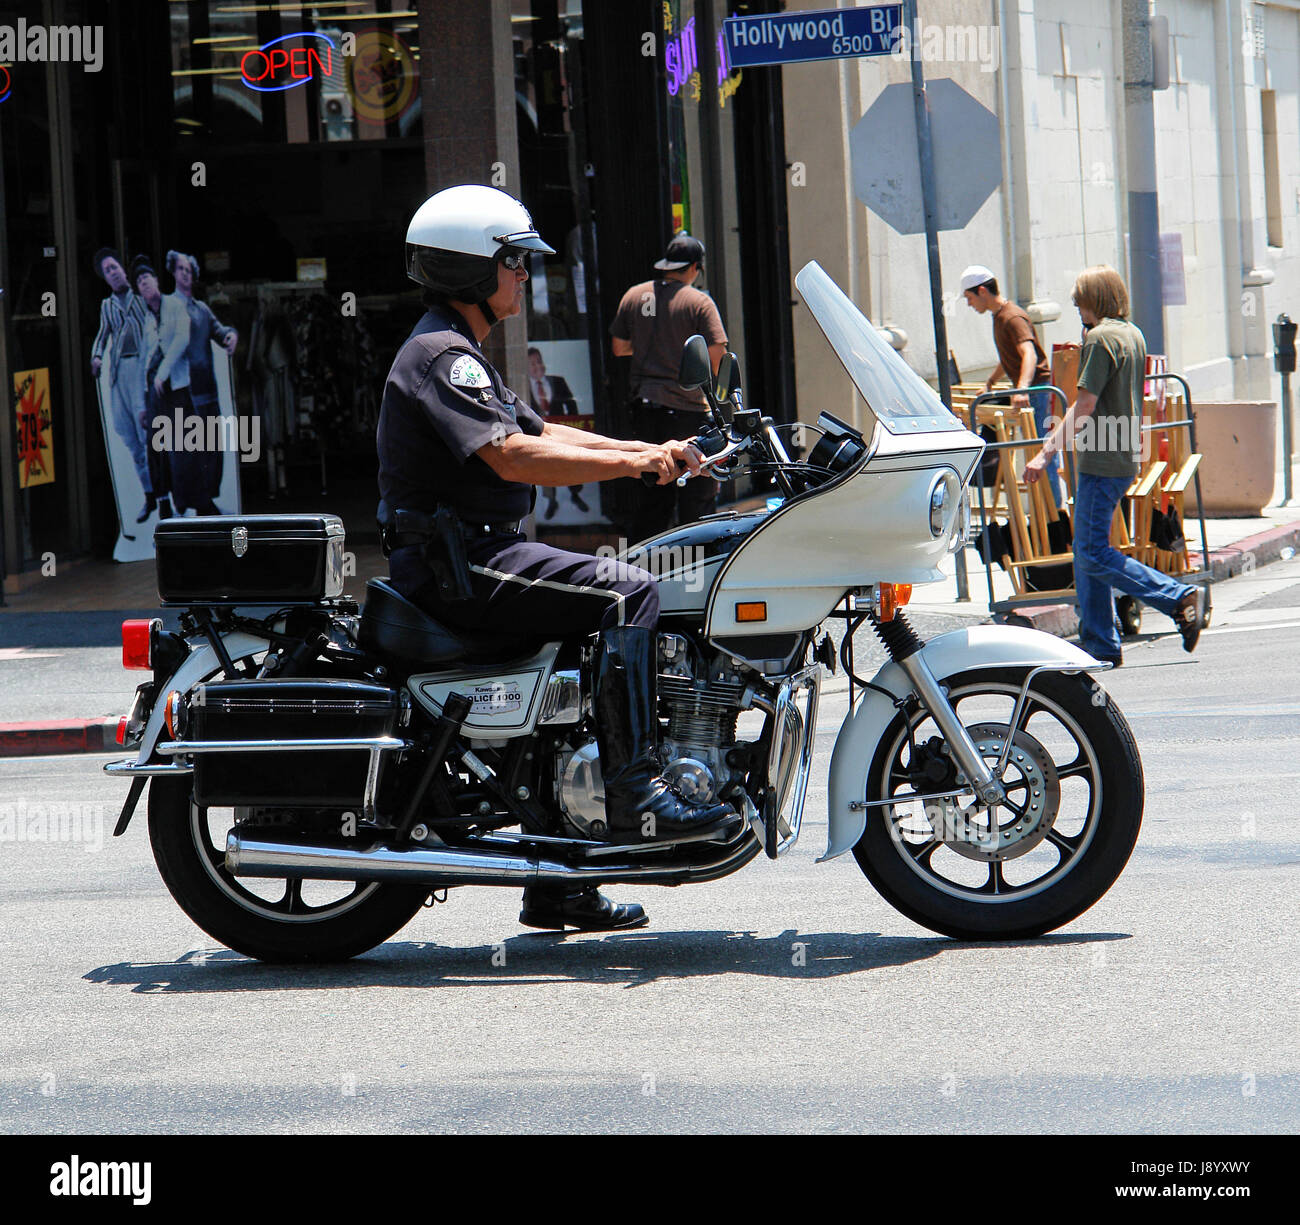 Los Angeles Polizei Department.LAPD.Police Mann Offizier auf dem Motorrad unterwegs in Hollywood, Los Angeles, Kalifornien, USA, Vereinigte Staaten von Amerika Stockfoto